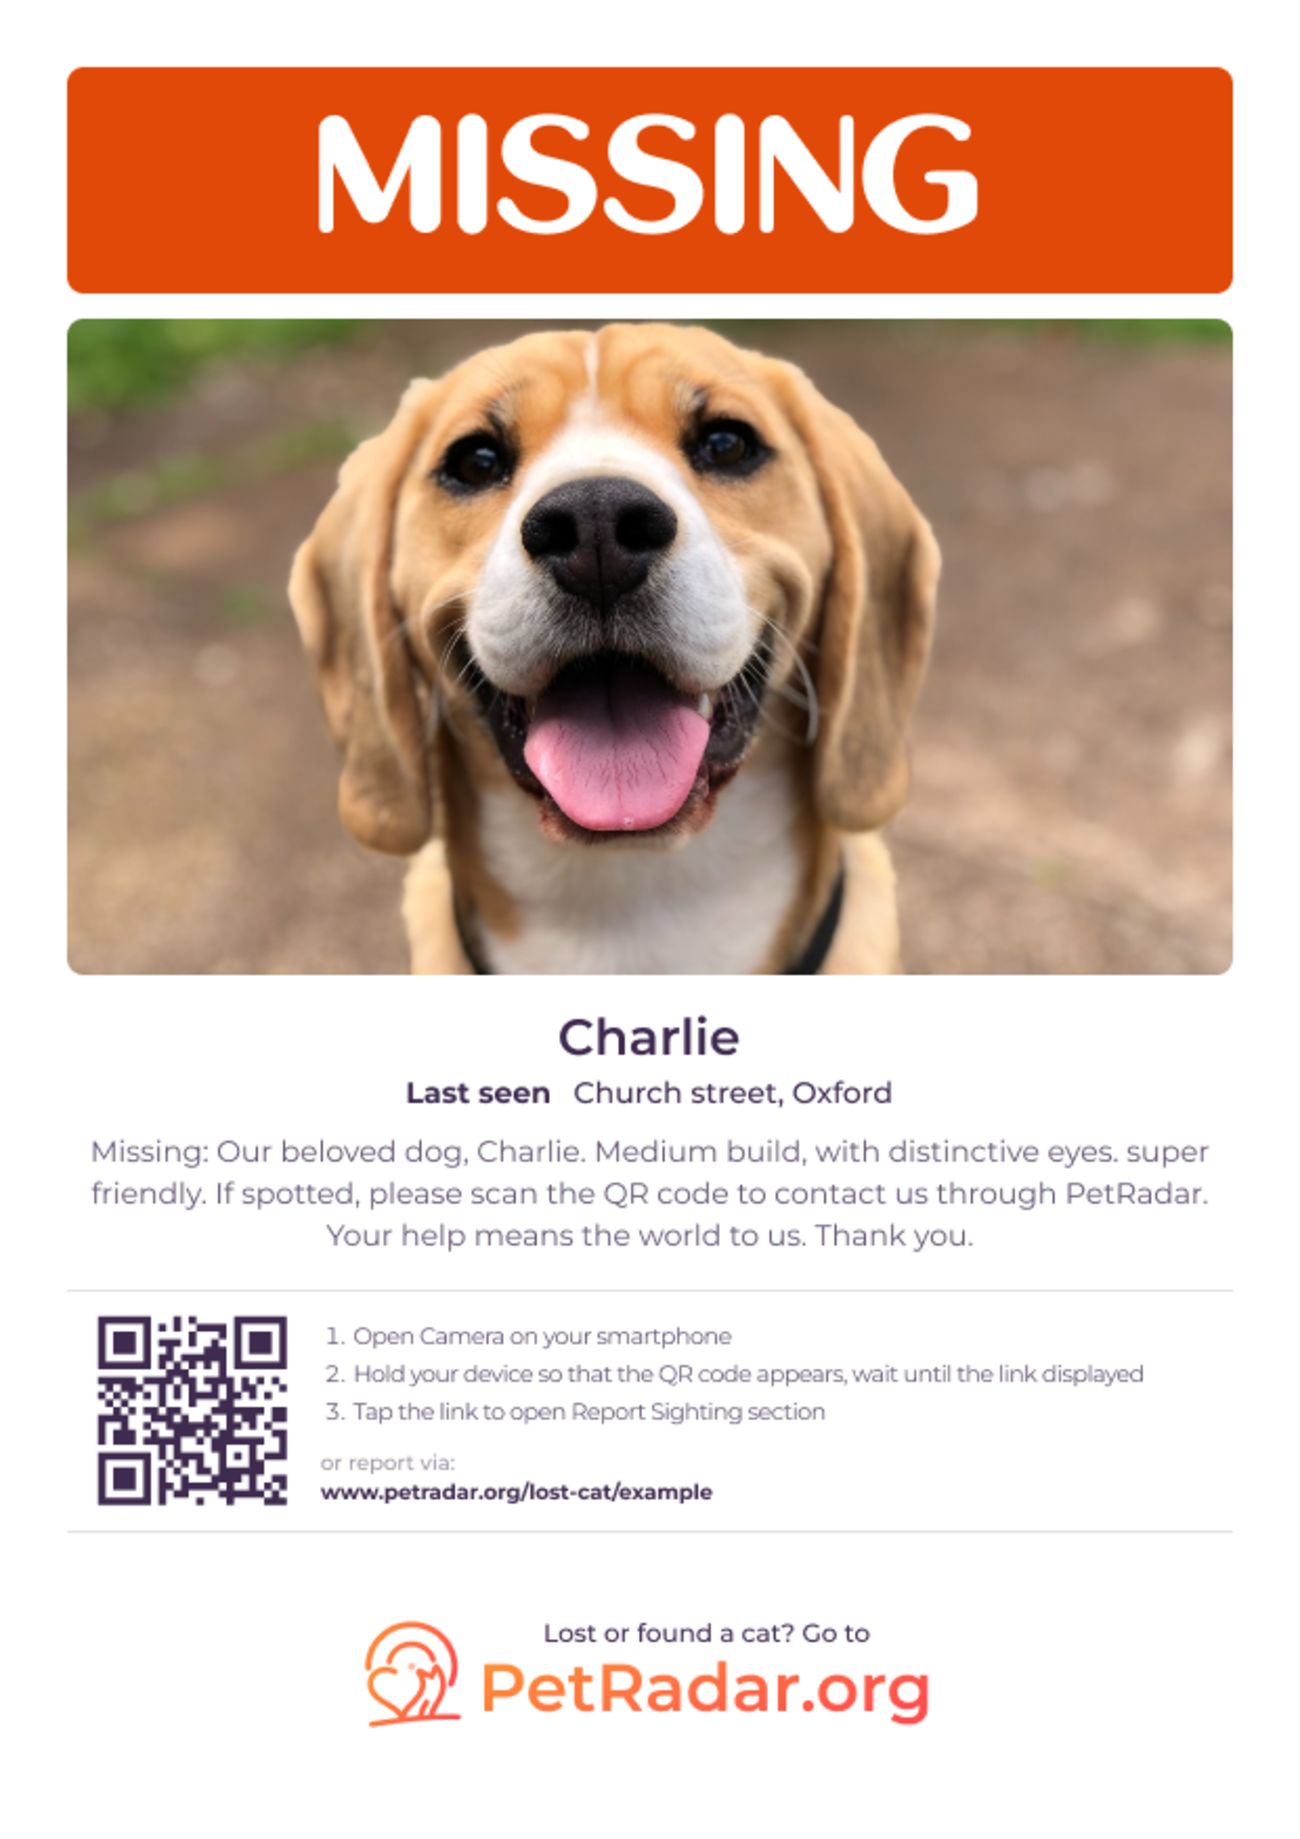 PetRadar's kostenloser Download für vermisste Hundeplakate